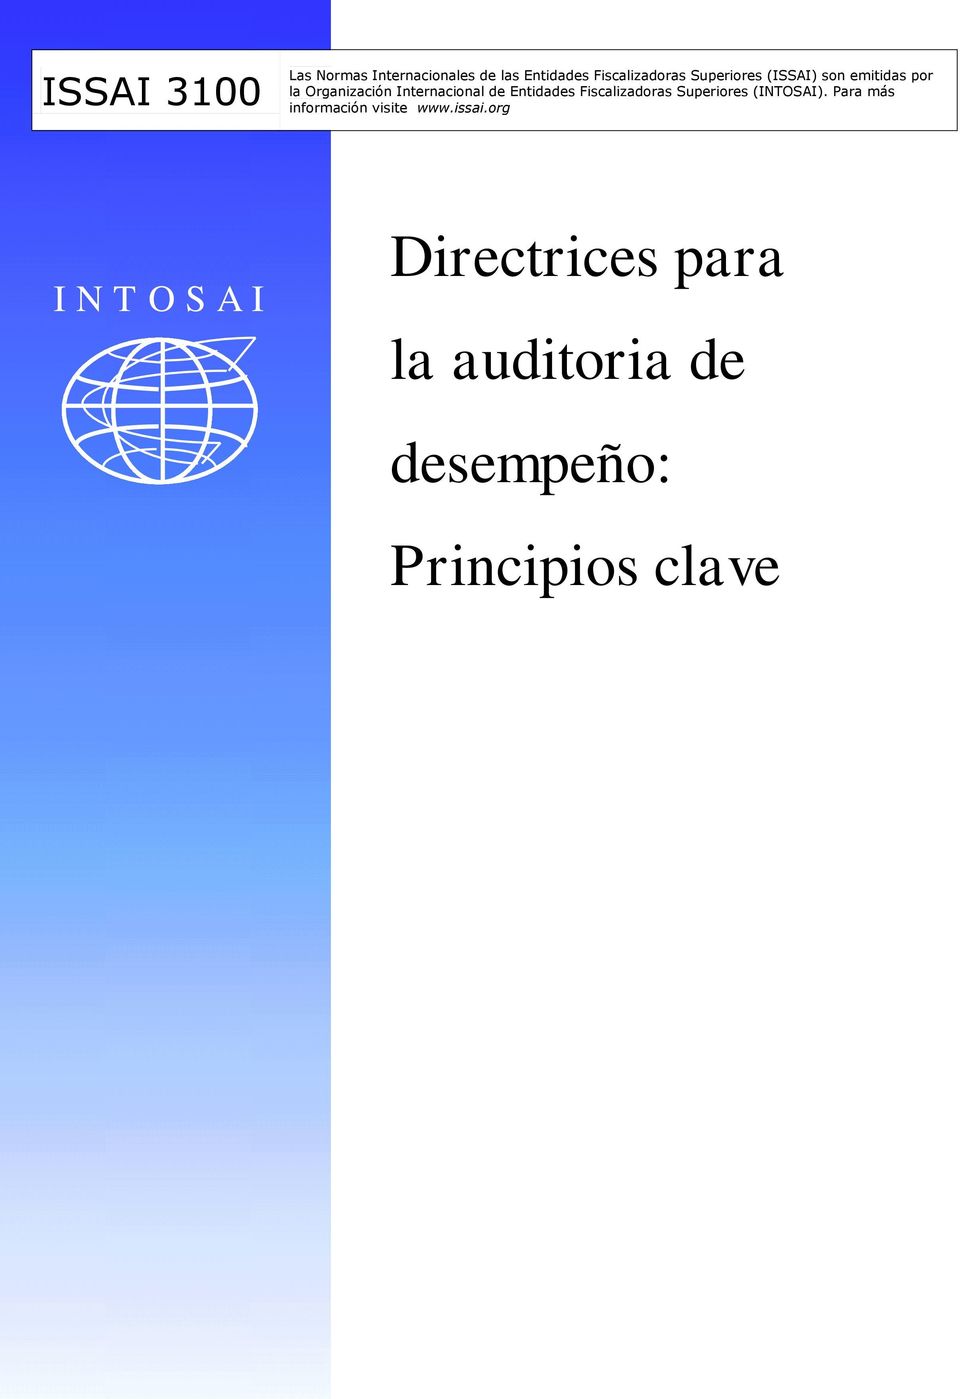 Entidades Fiscalizadoras Superiores (INTOSAI).